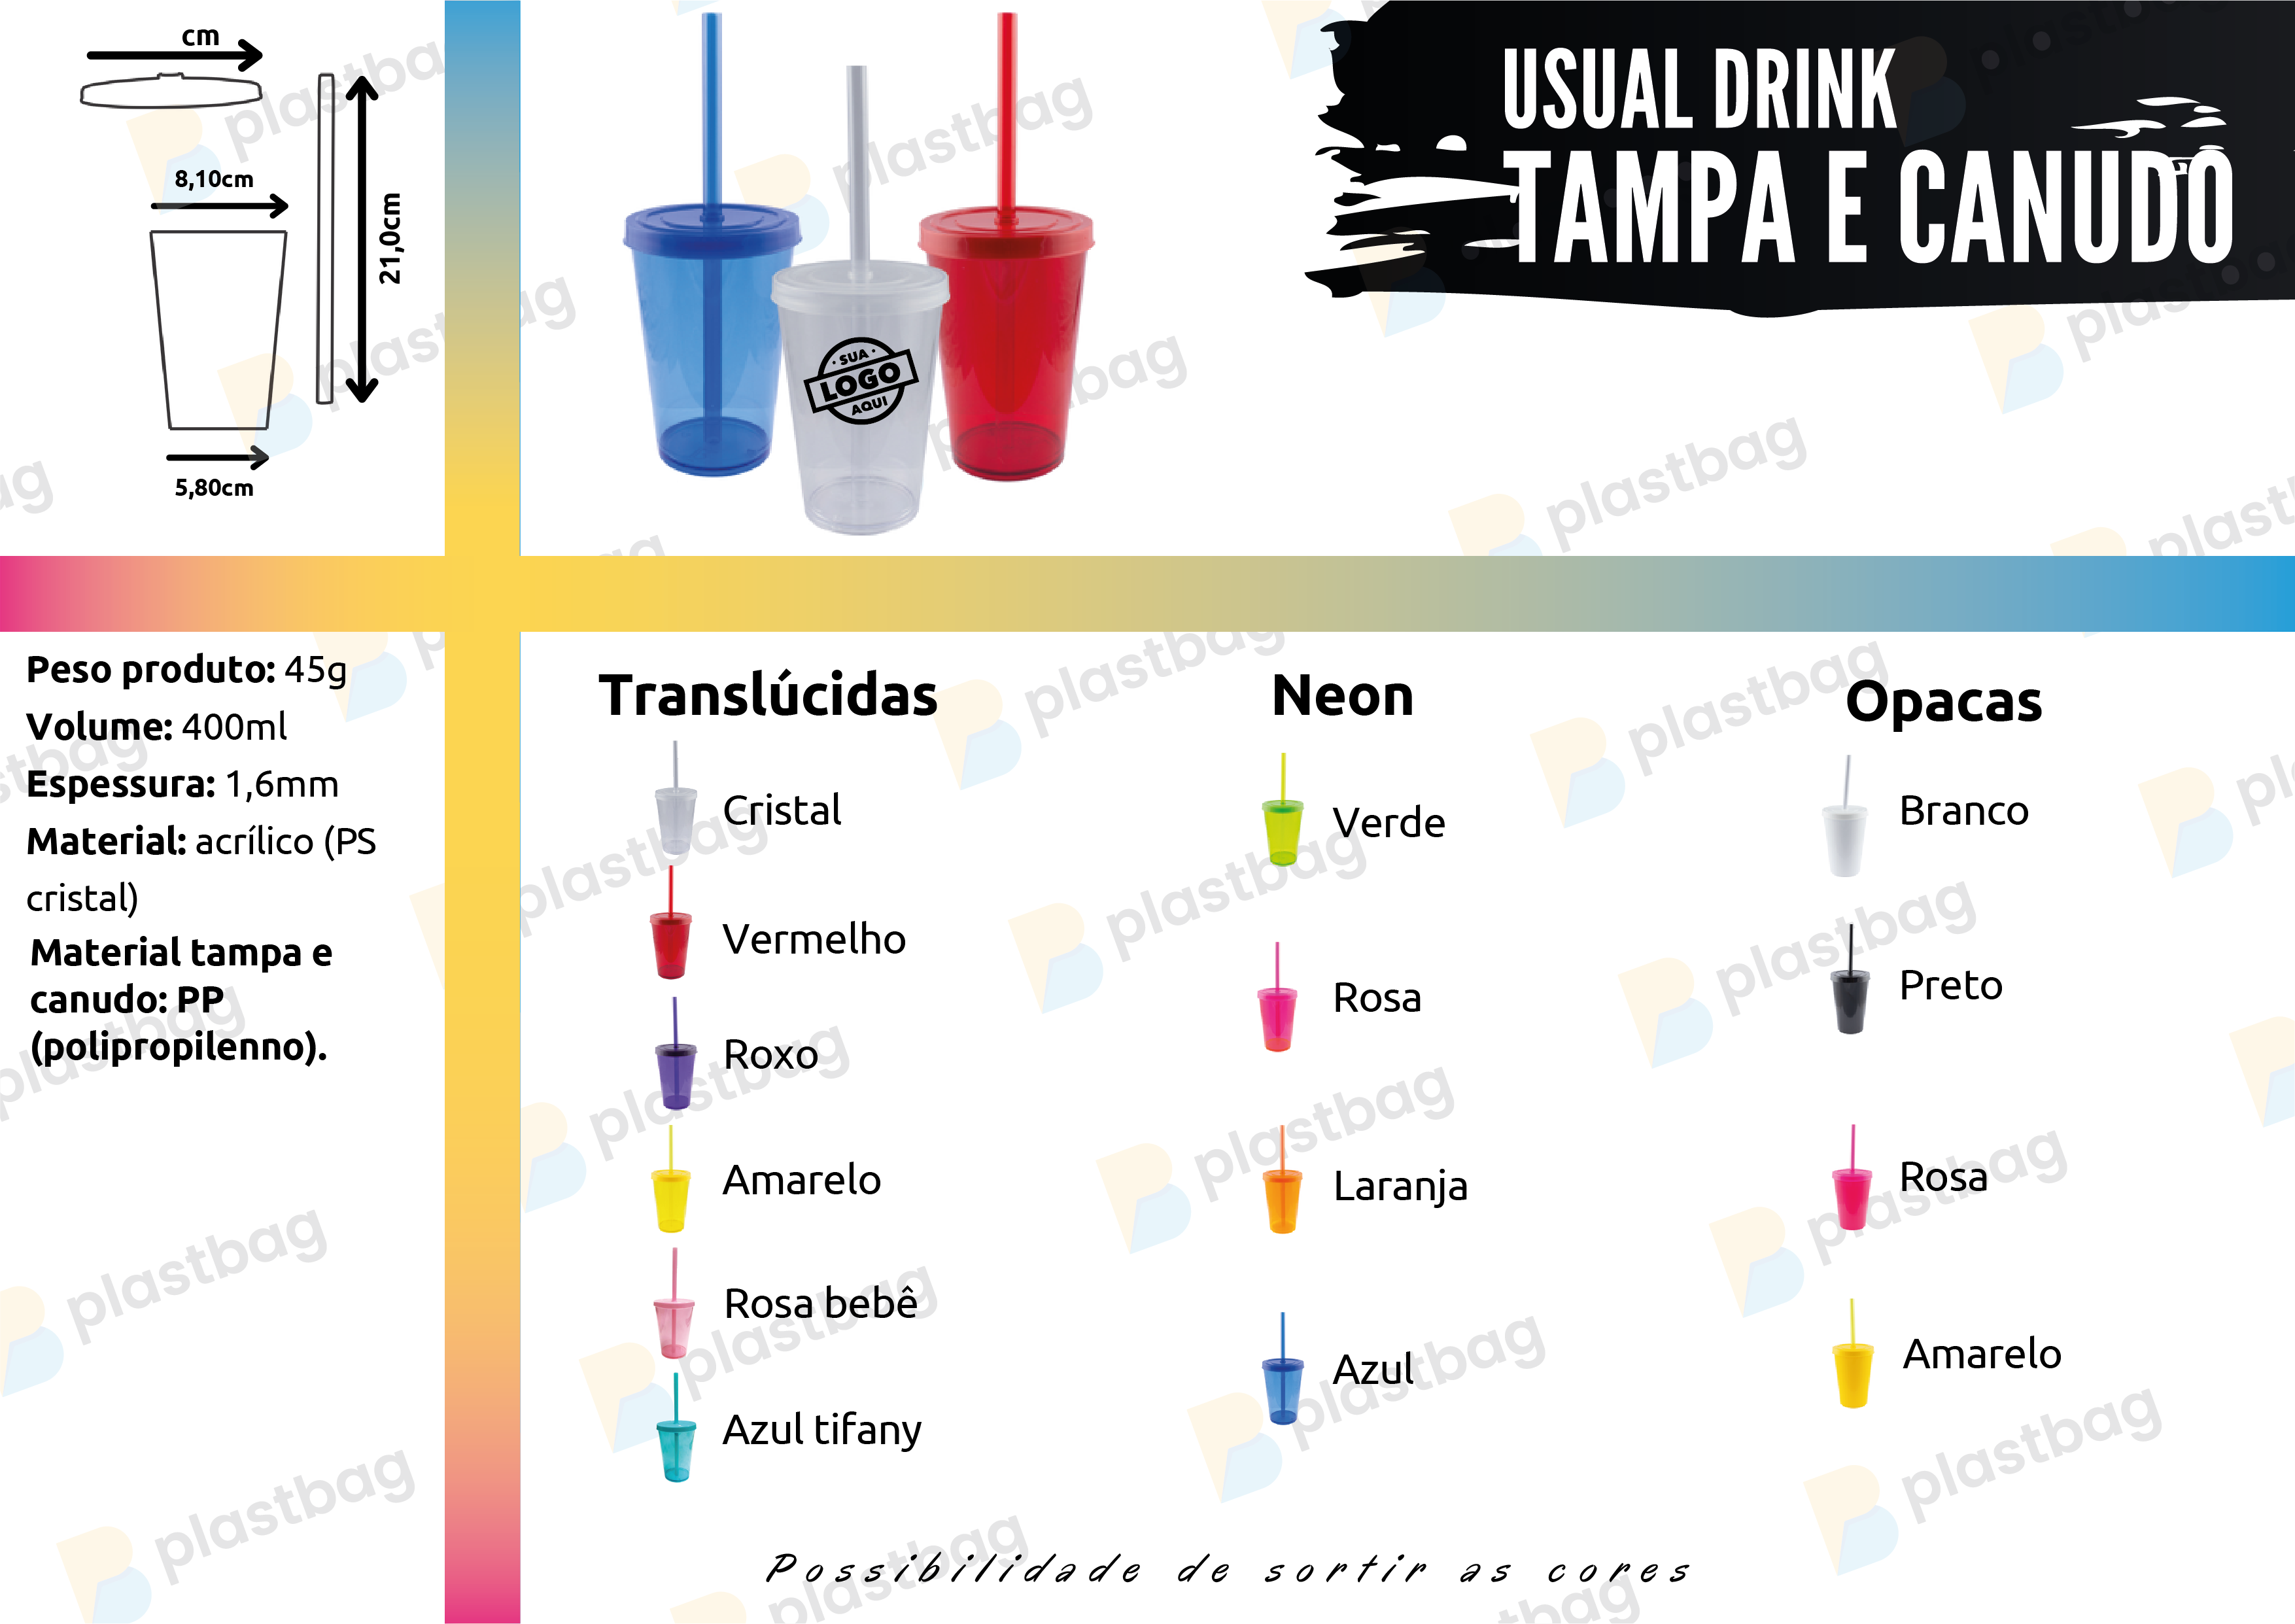 Copo Usual Drink com Tampa e Canudo Personalizado